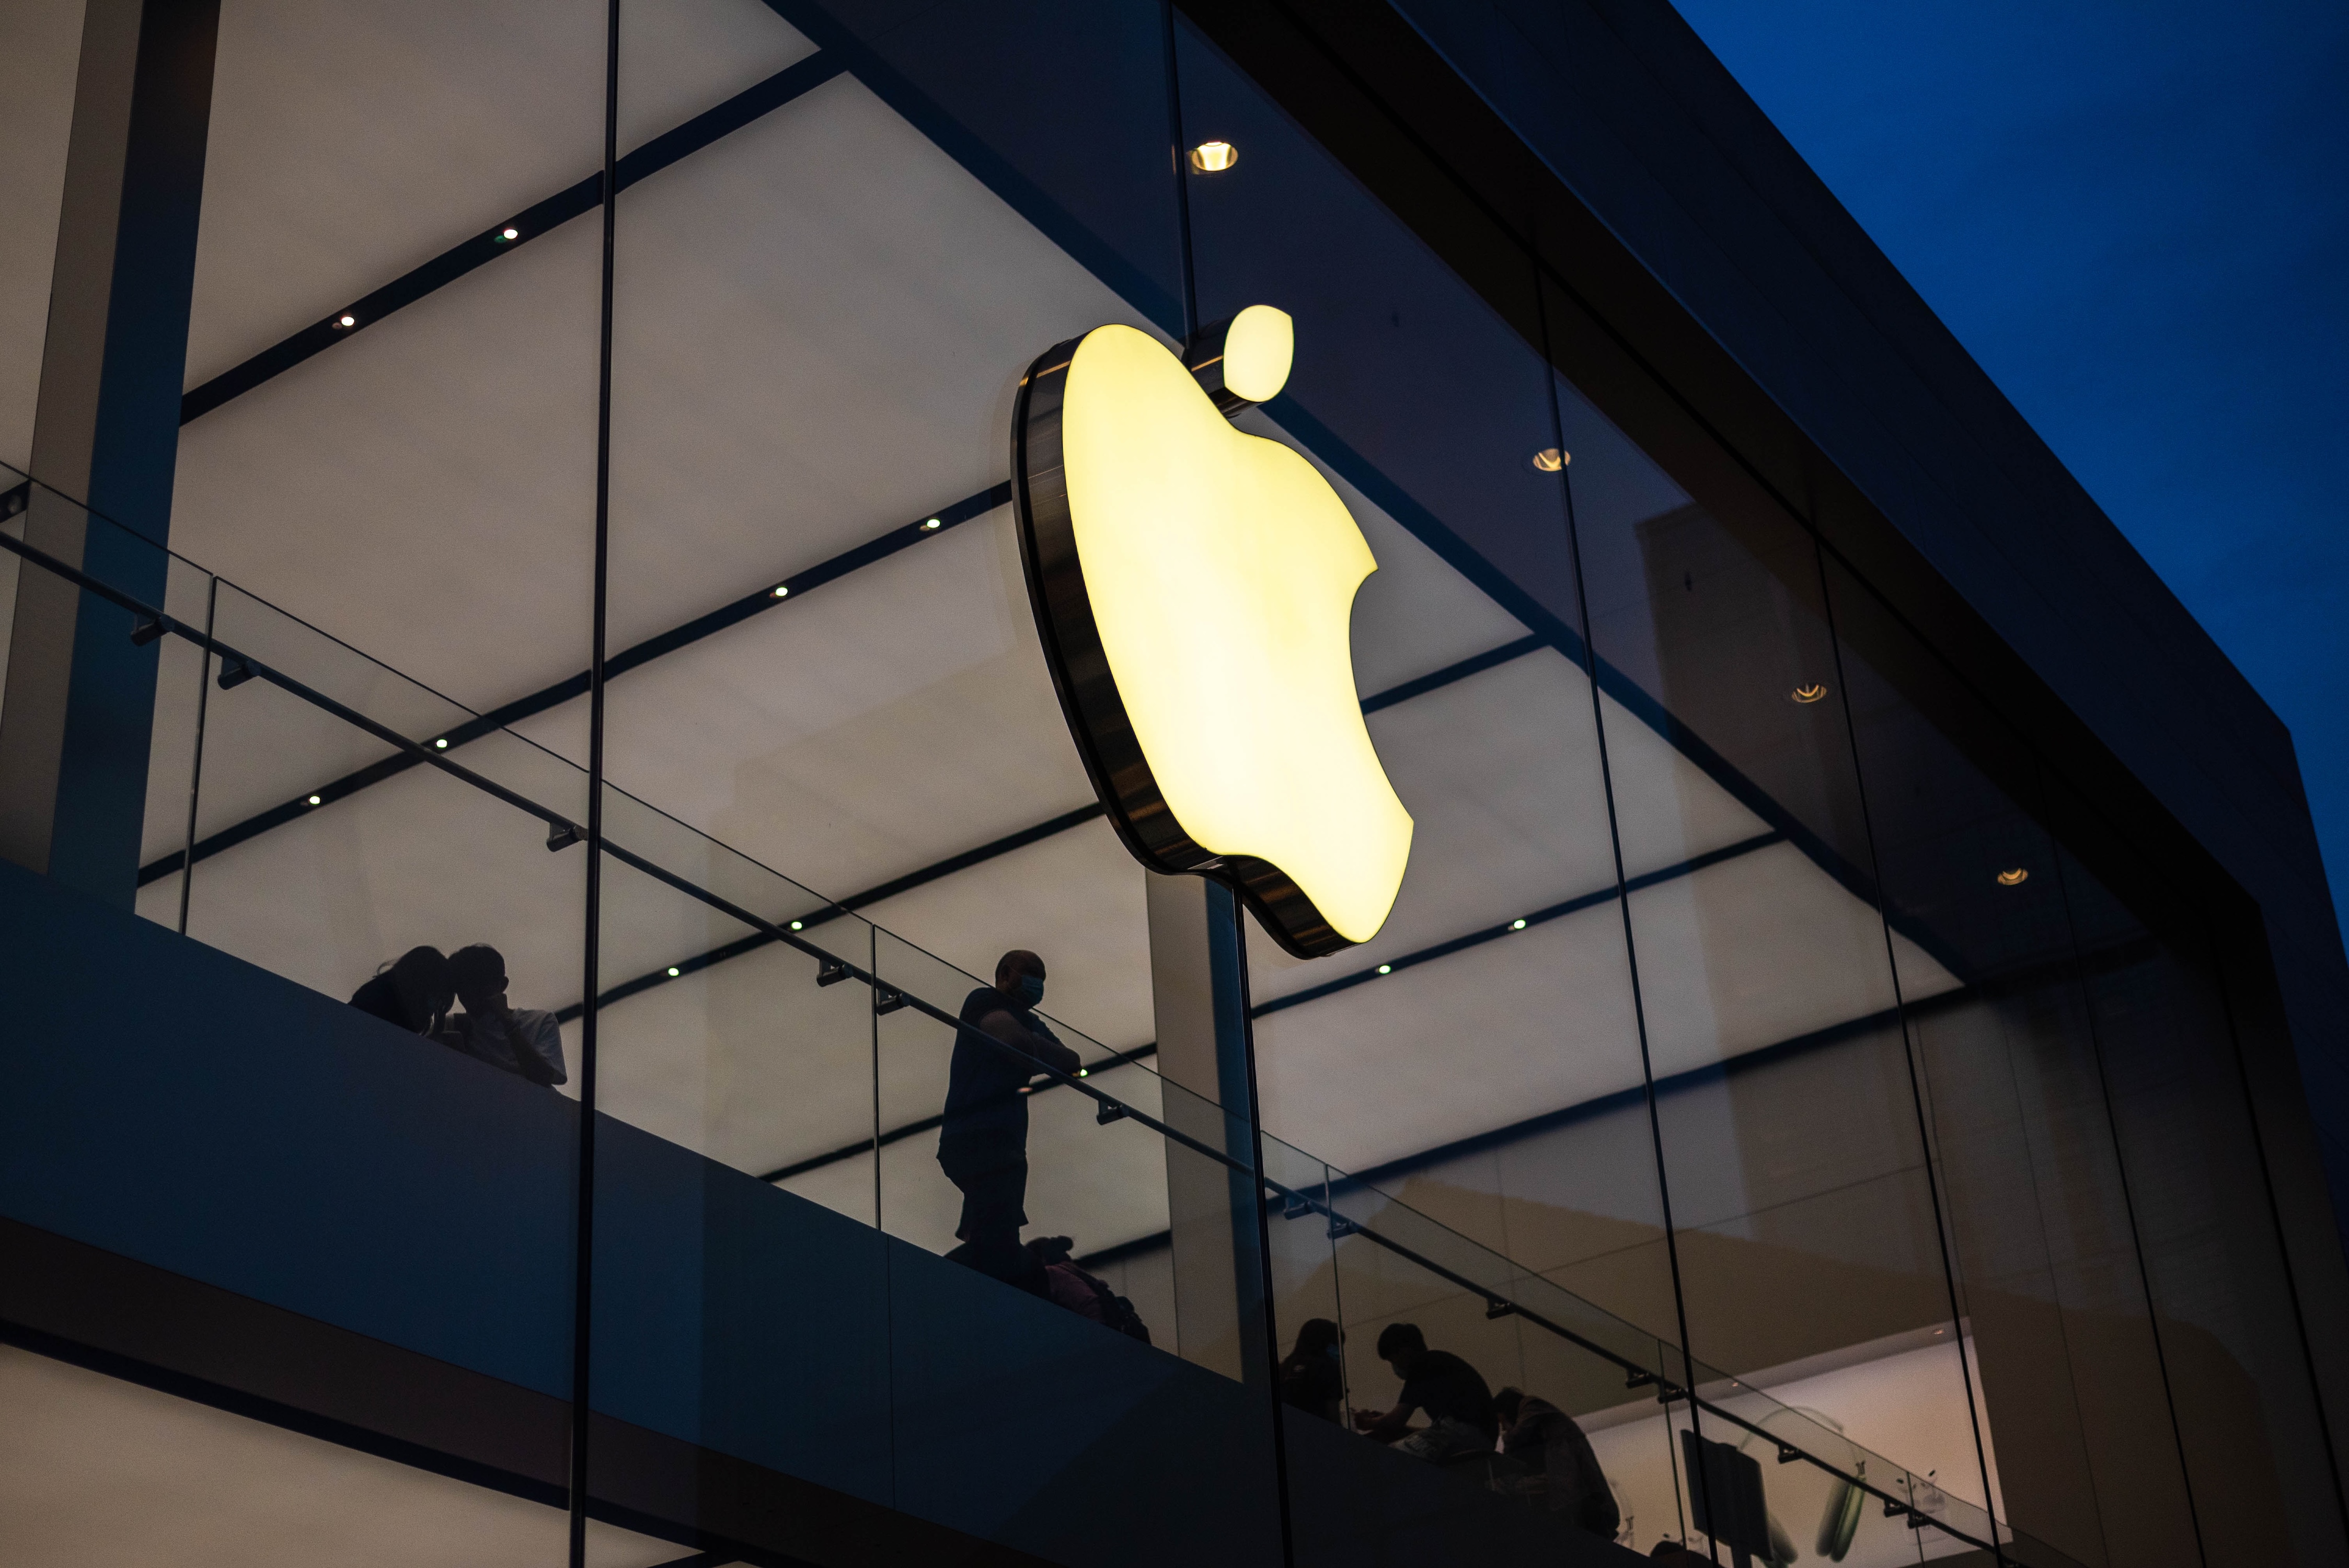 À son tour, Apple va être inculpée pour pratiques anticoncurrentielles par la justice américaine